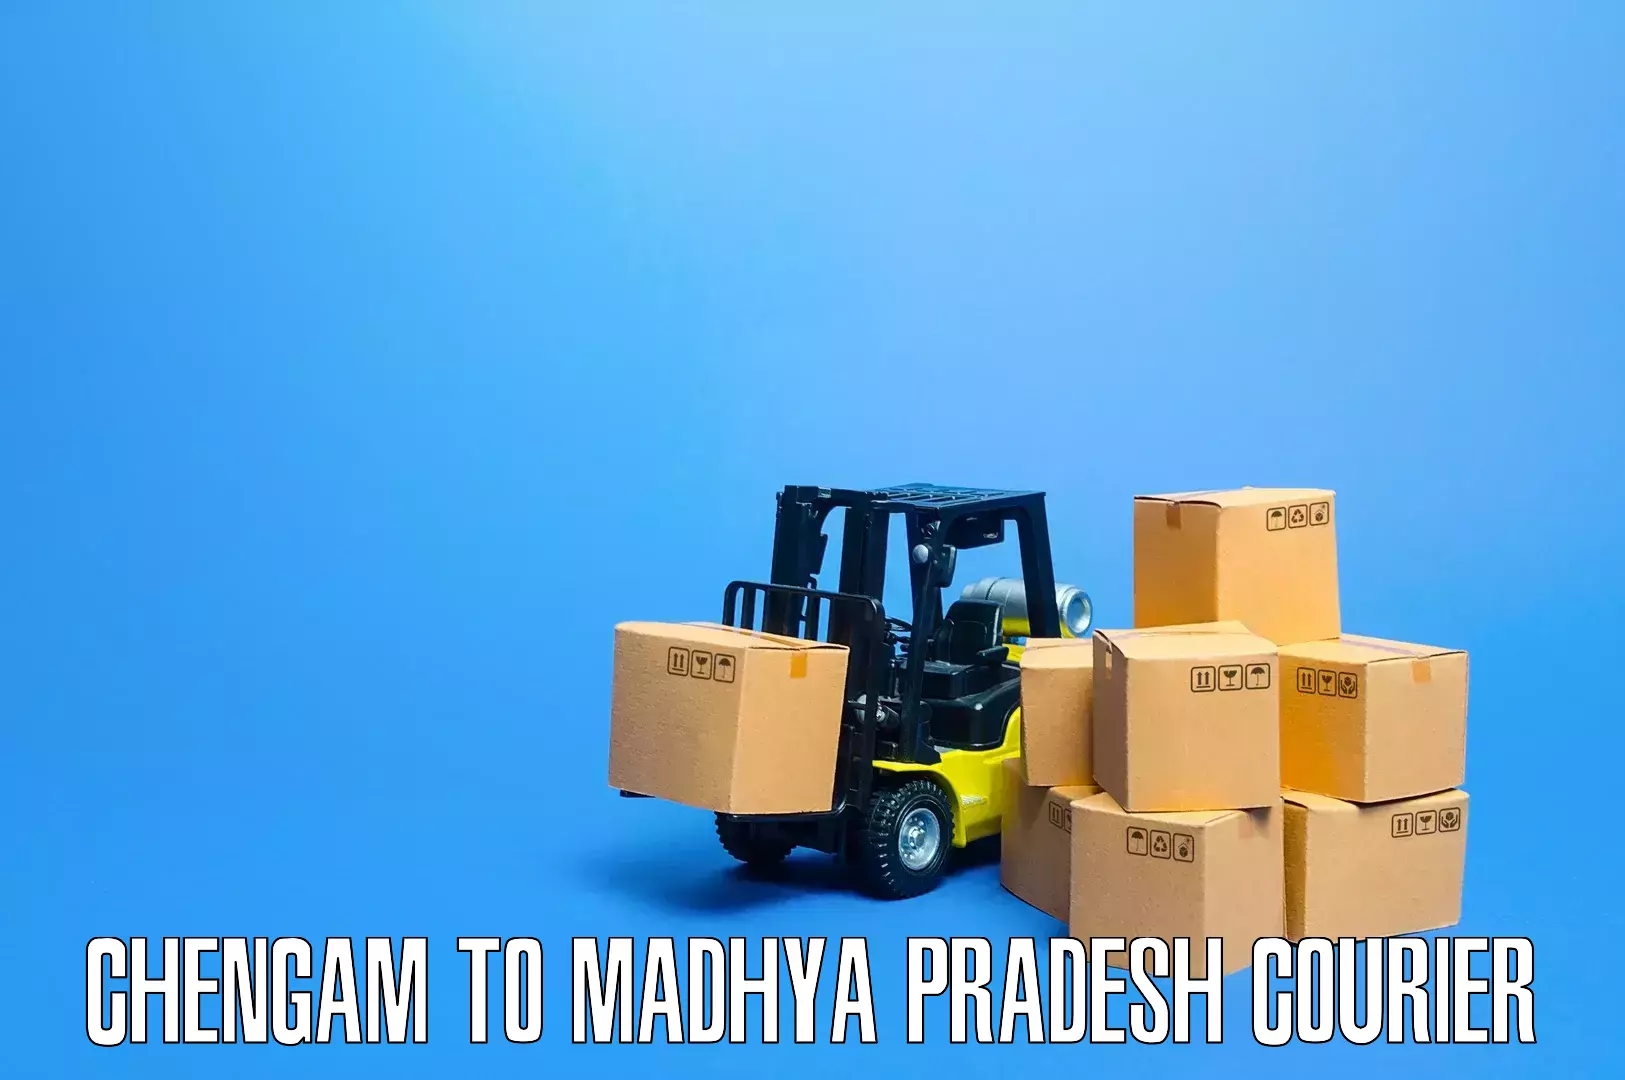 Expert furniture transport in Chengam to Madhya Pradesh